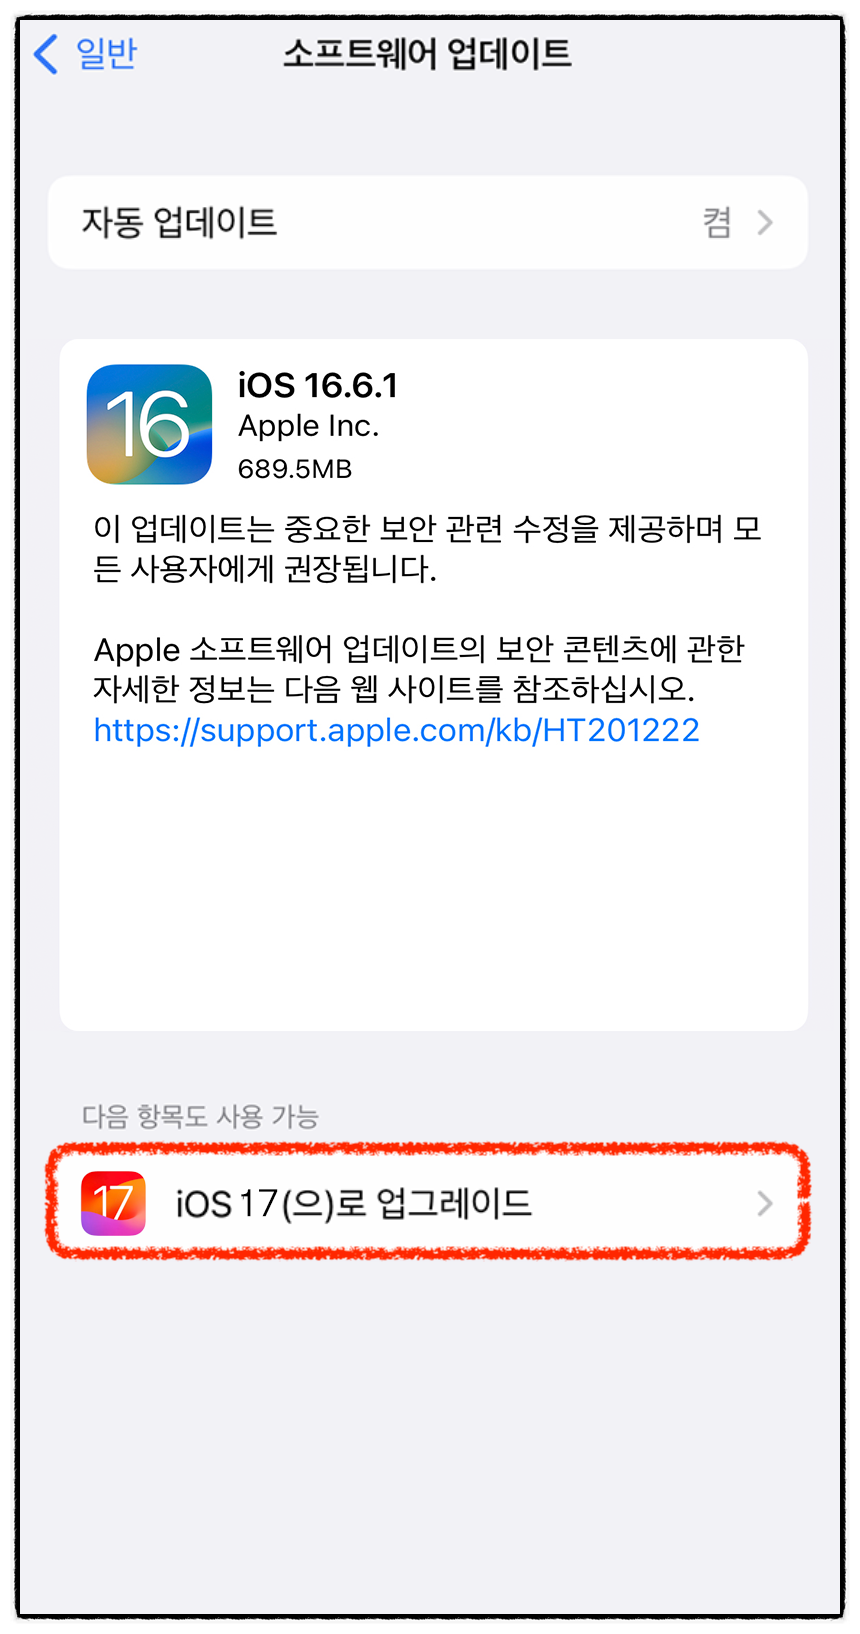 iOS 17 업데이트 방법 (지원 기기) 및 새로운 기능 정리